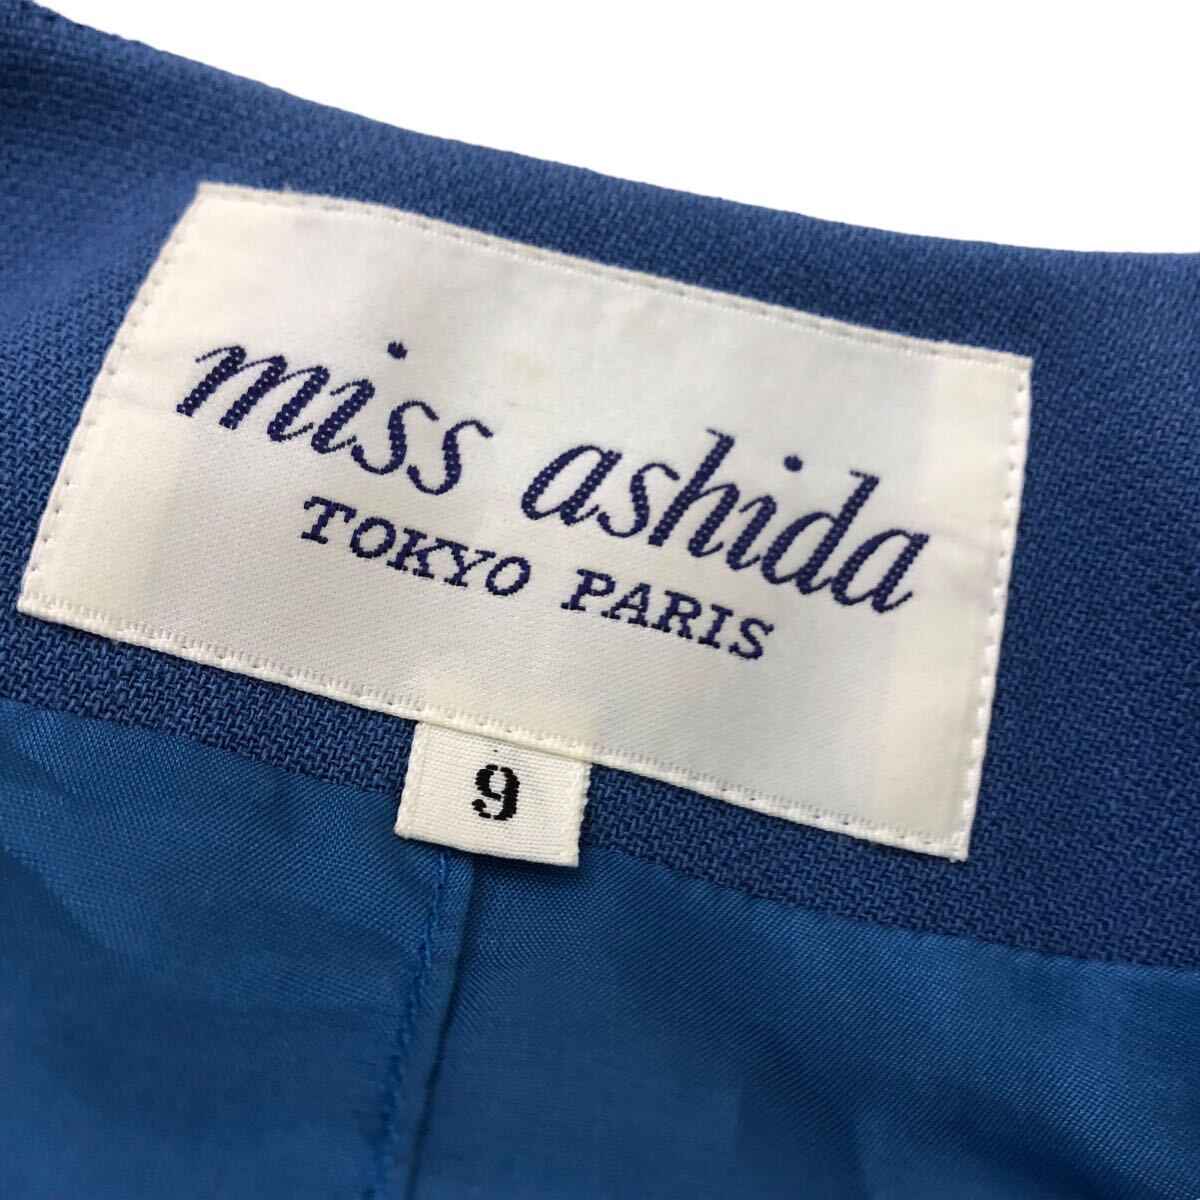 S211⑨ miss ashidaミス アシダ スカートスーツ ジャケット スカート セットアップ ボトムス 毛100% レディース 9 ブルー 青_画像10